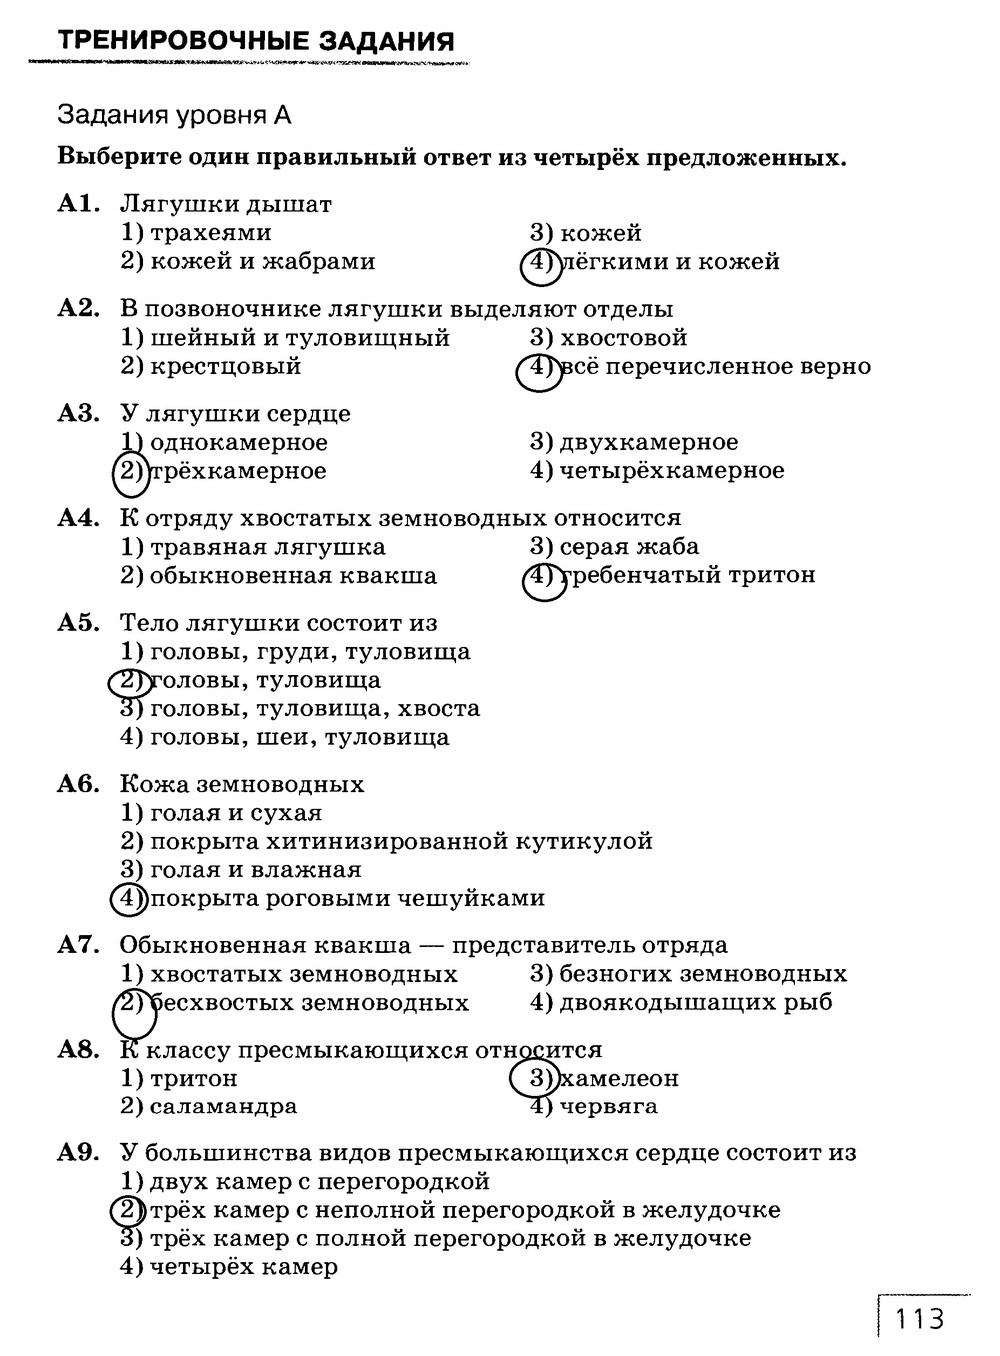 Рабочая тетрадь, 7 класс, Захаров В.Б., Сонин Н.И., 2015, задание: стр. 113